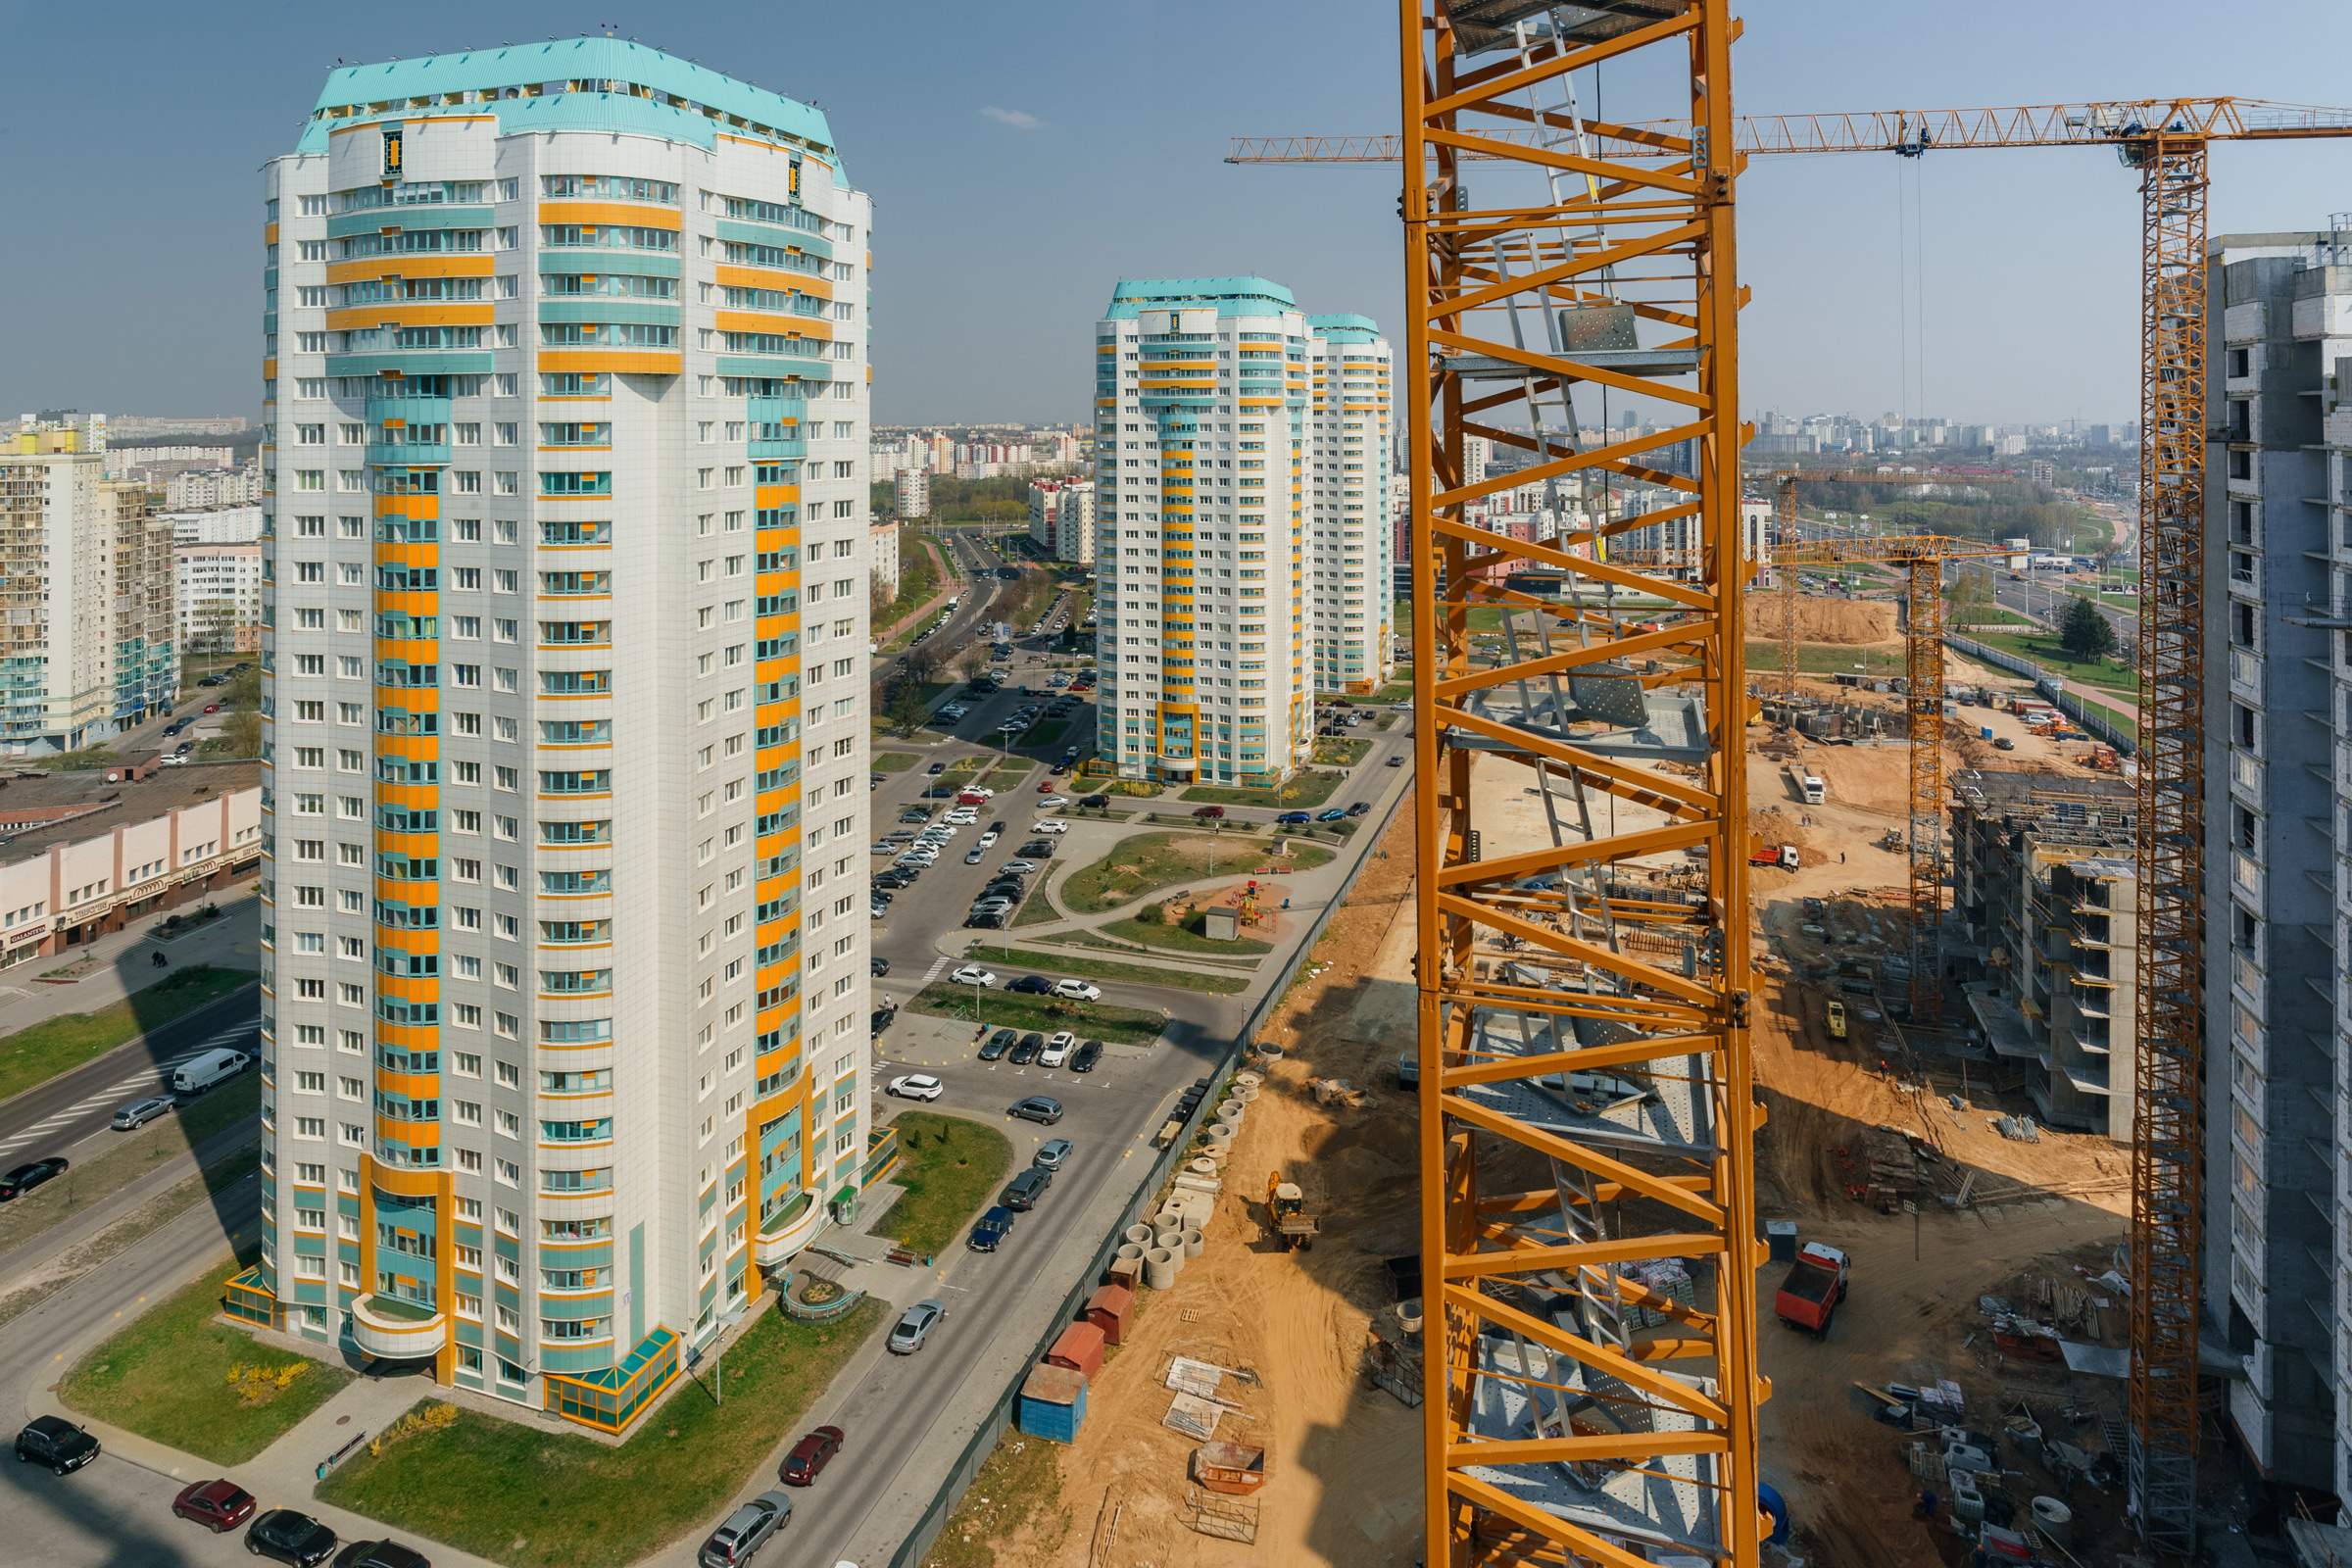 Рекламная студия предлагает услуги опытного фотографа промышленных объектов, исполнительная съемка строительства многоквартирного высотного жилого дома в Минске